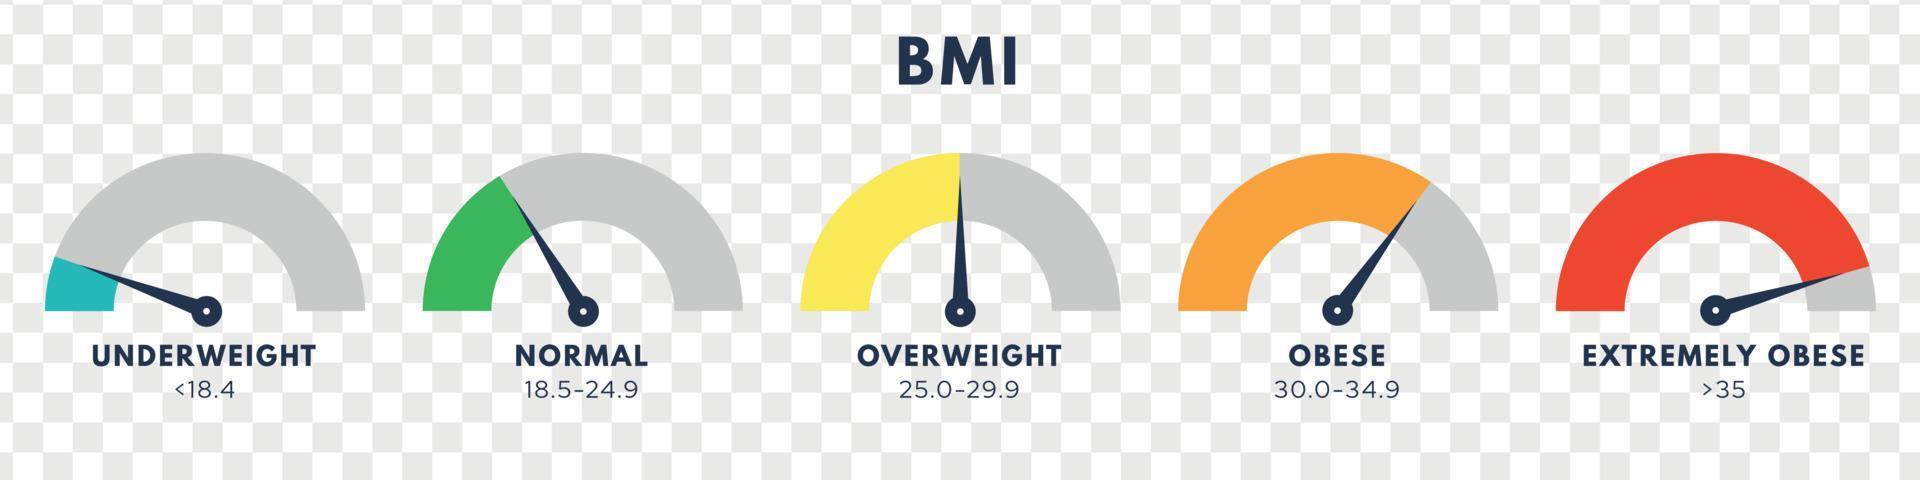 lichaam massa inhoudsopgave of massa inhoudsopgave schaal. types van bmi.gewicht verlies concept. vector geïsoleerd illustratie